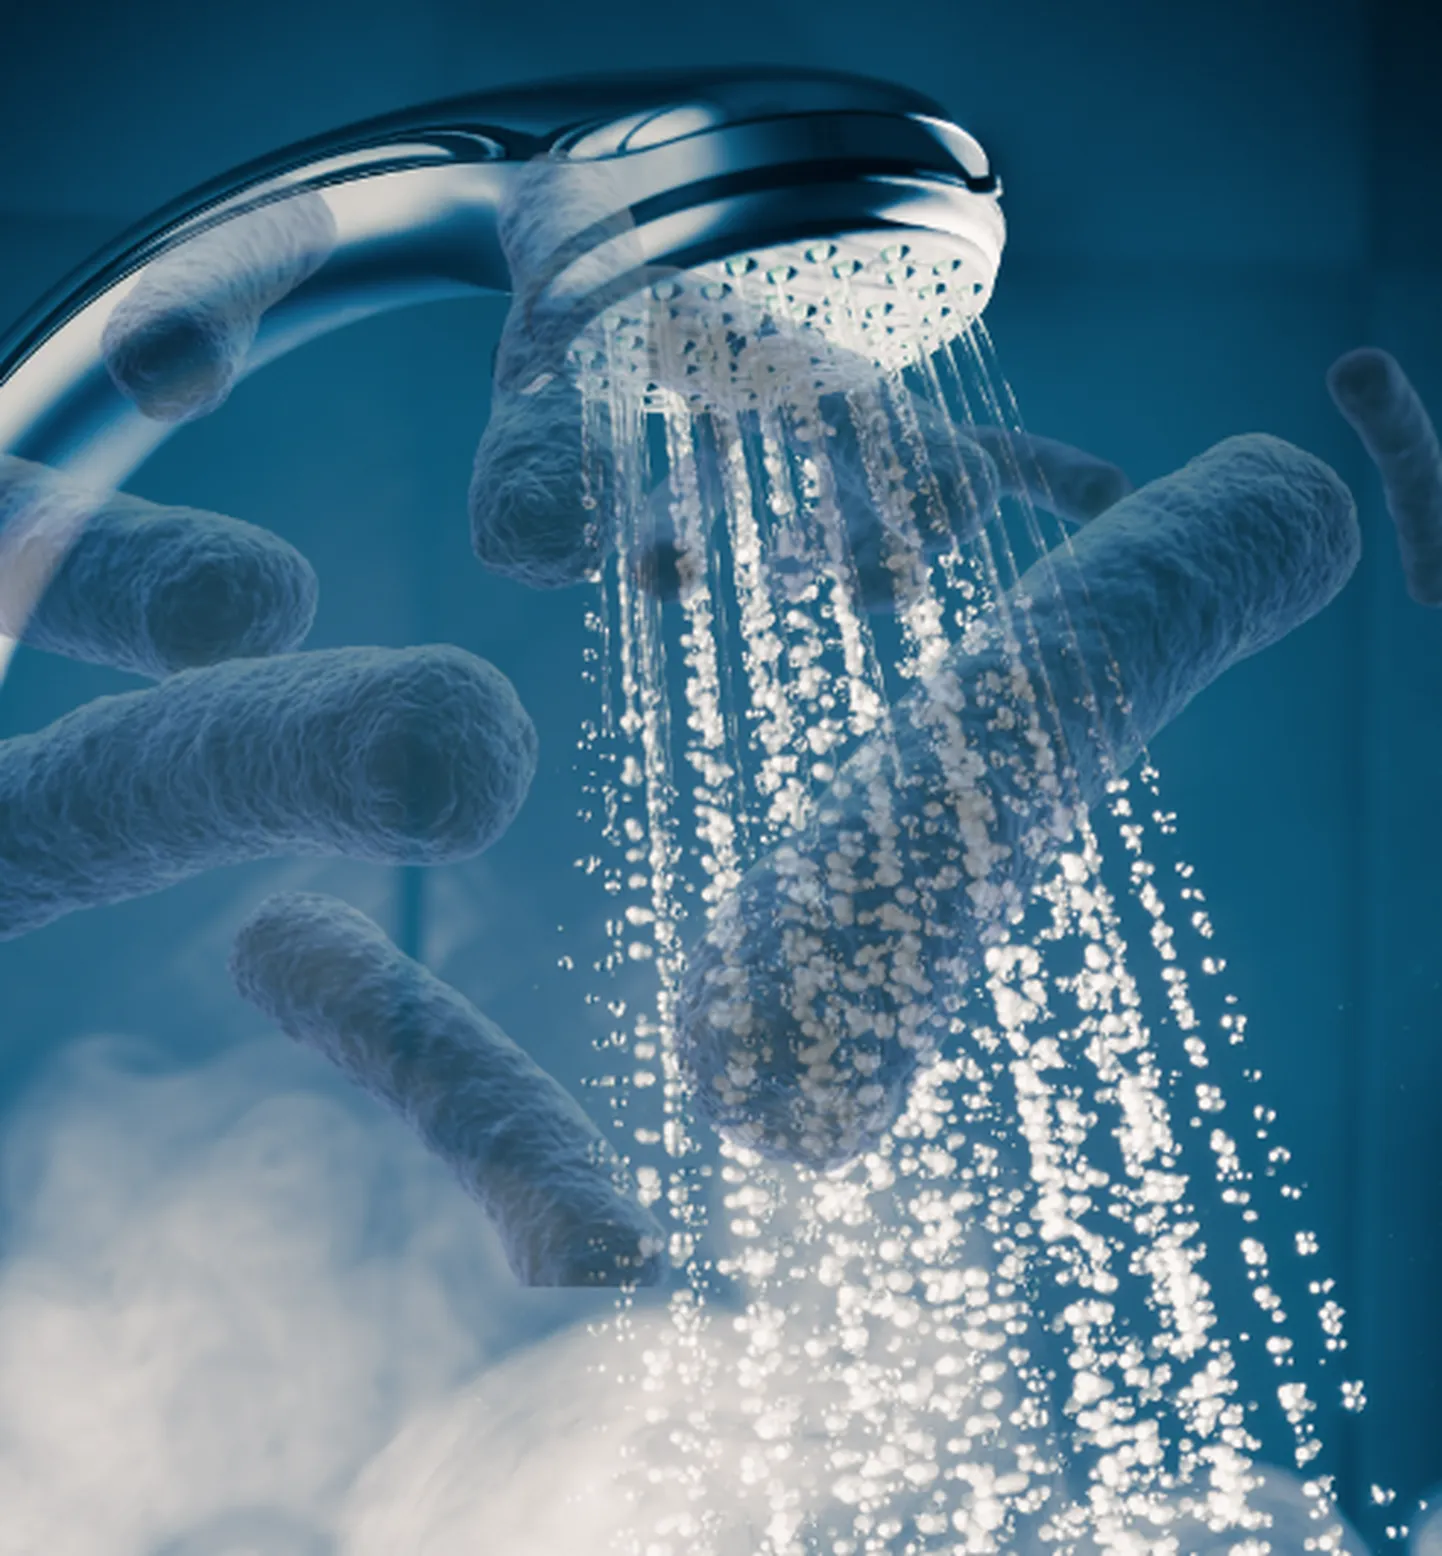 Kahest Tartu veekeskusest avastati, et Legionella bakteri sisaldus ületas normpiire